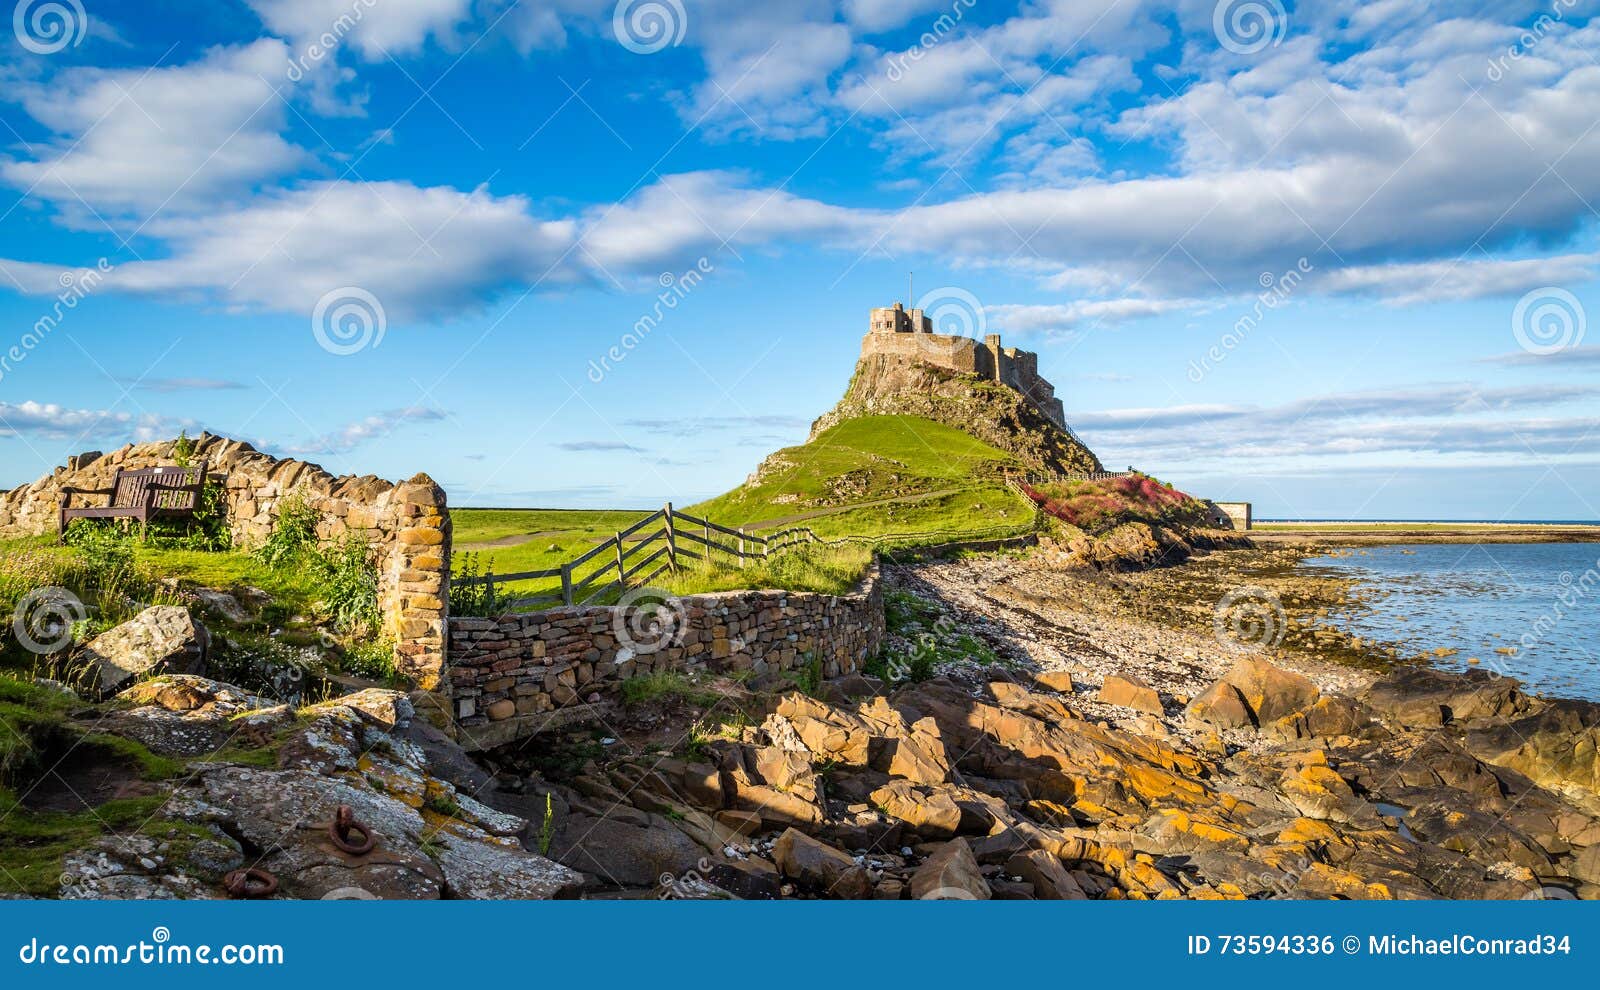 lindisfarne castle on the northumberland coast